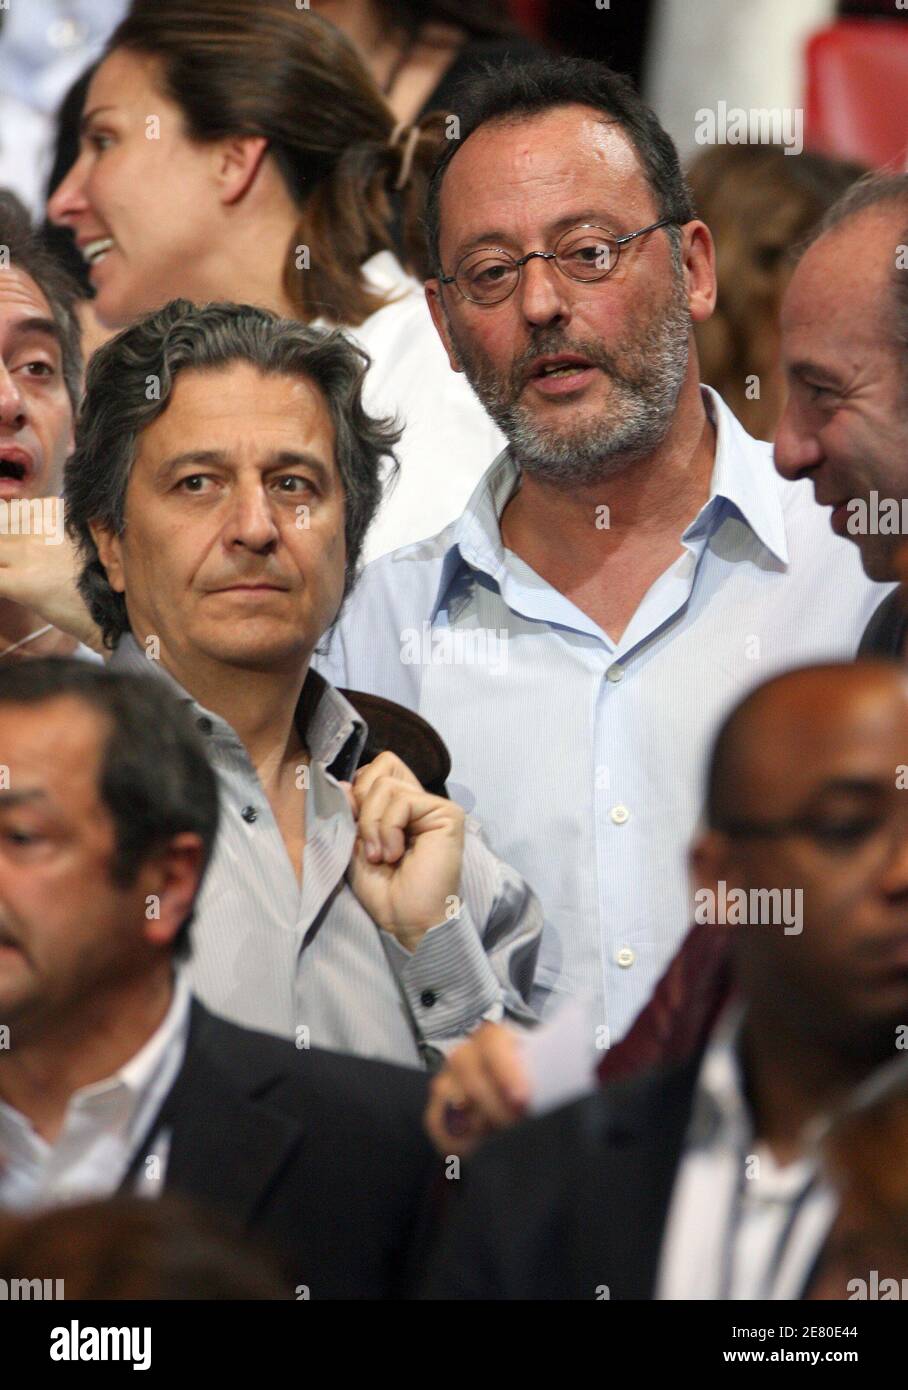 Christian clavier et Jean Reno sont vus à l'écoute du favori présidentiel  Nicolas Sarkozy qui s'adonne à des dizaines de milliers de supporters à la  salle de concert Paris Bercy à Paris,